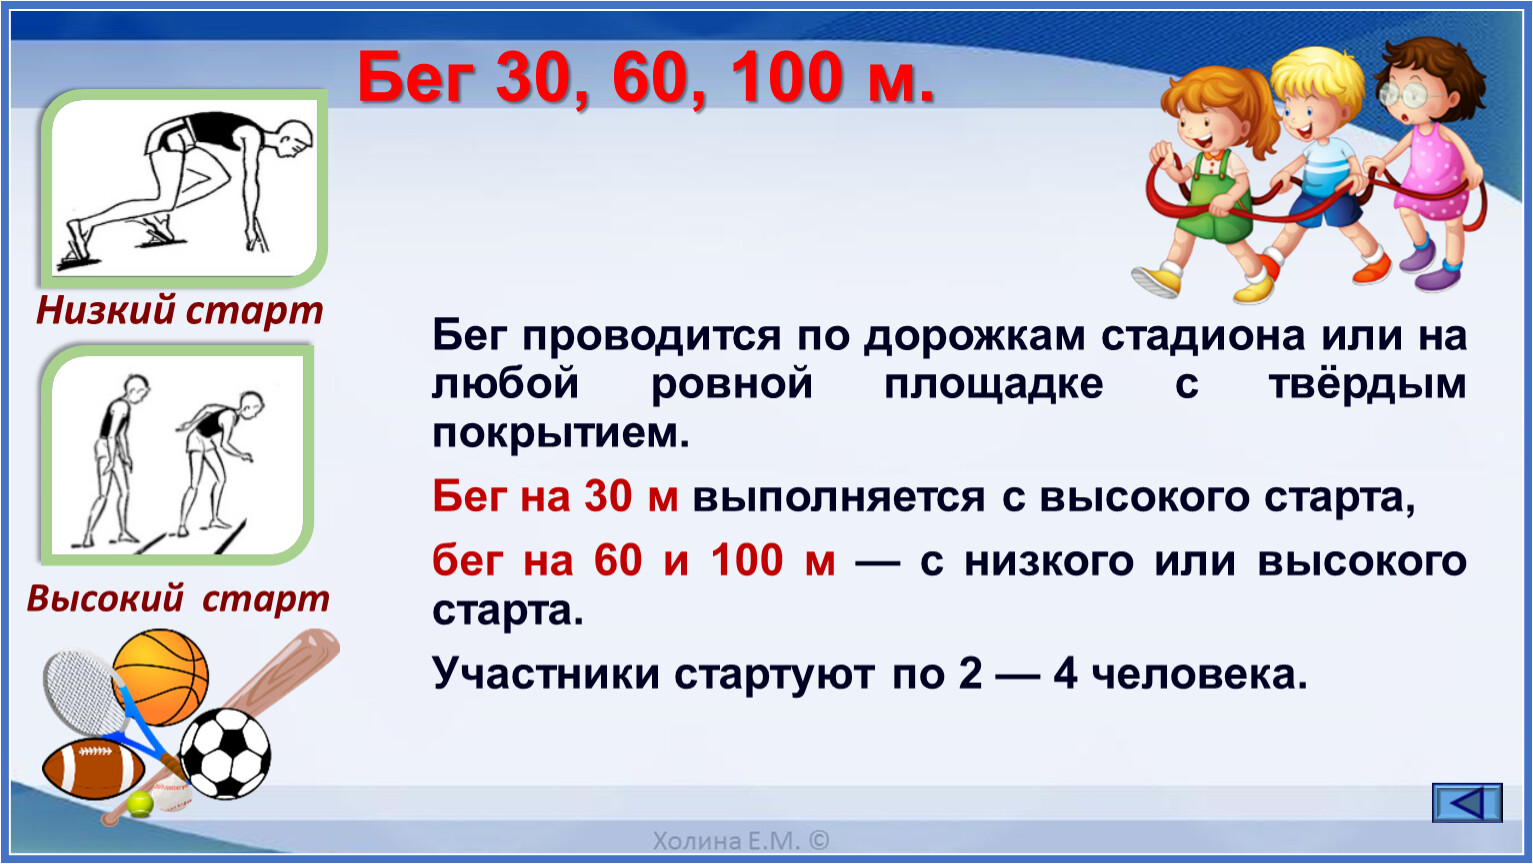 Гто 60 метров. Тест бег 30 метров 2 класс. Сообщение бег 30 метров. Бег на 30 60 100 метров. Техника бега на дистанцию 30 метров.